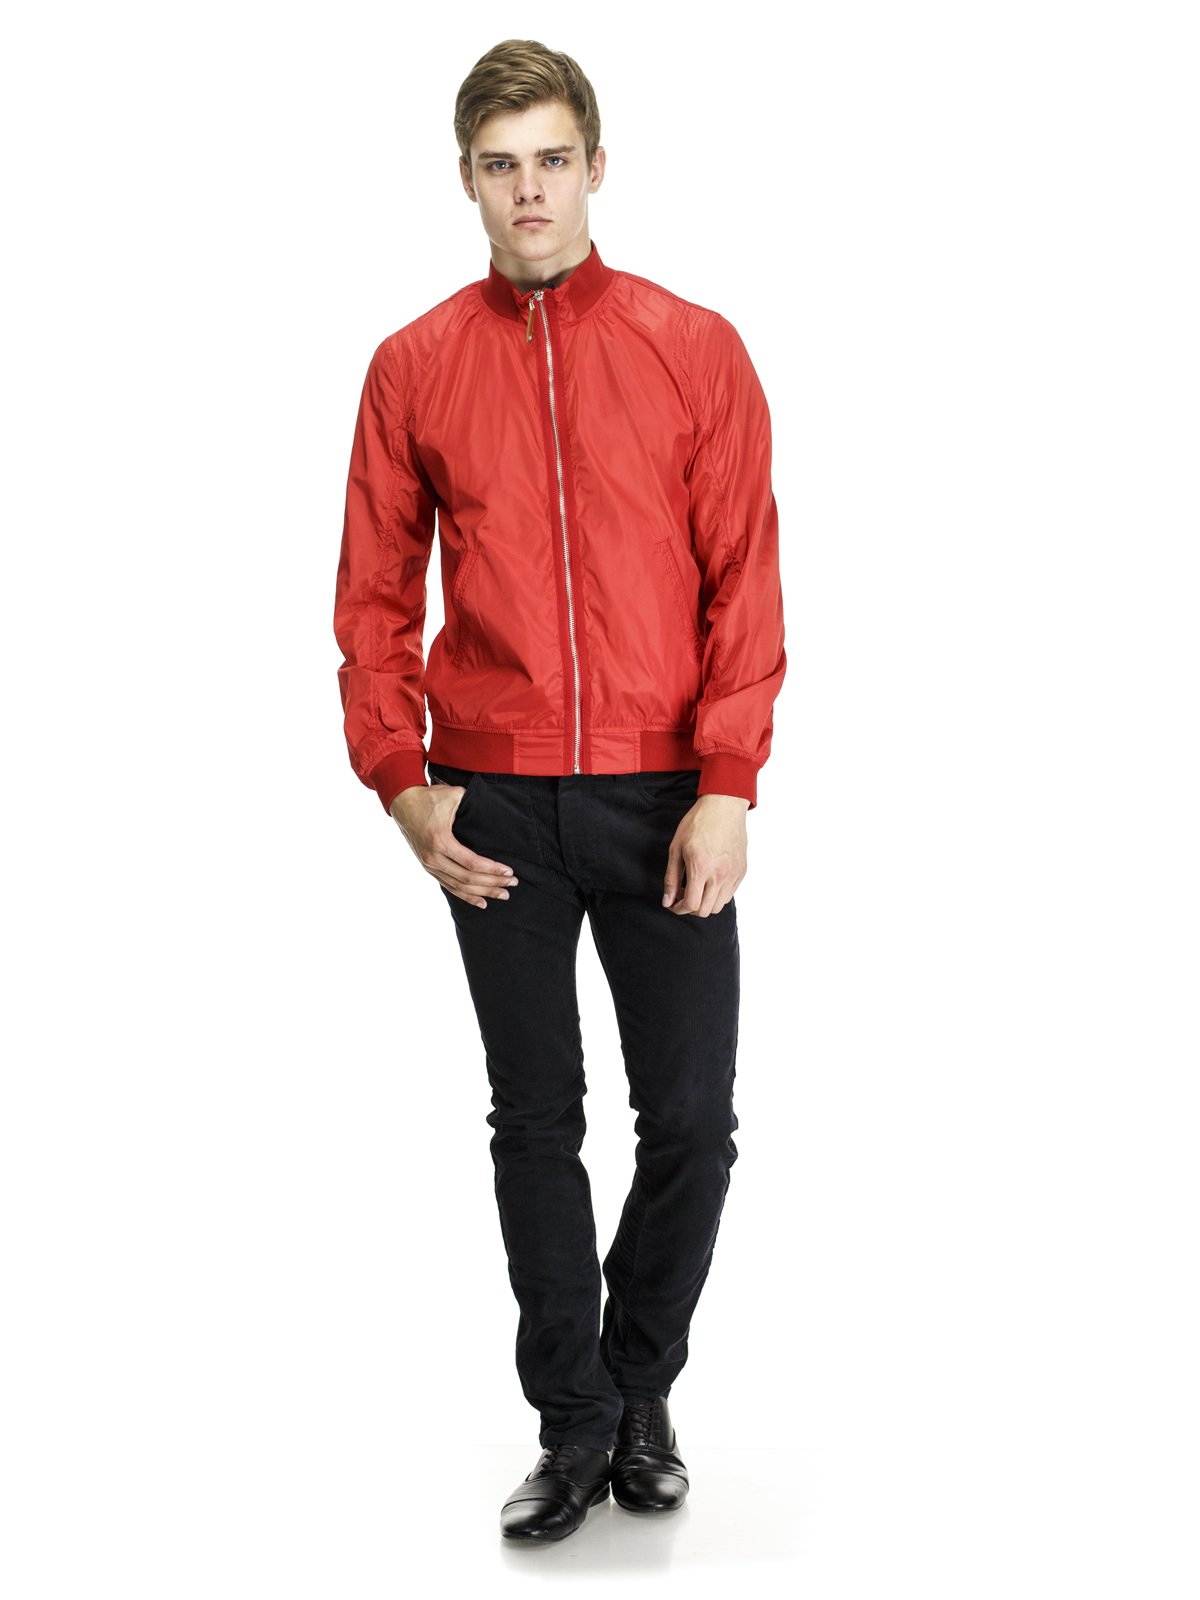 Куртка красная — Class Roberto Cavalli, акция действует до 14 мая 2019 года LeBoutique — Коллекция брендовых вещей от Class Roberto Cavalli —